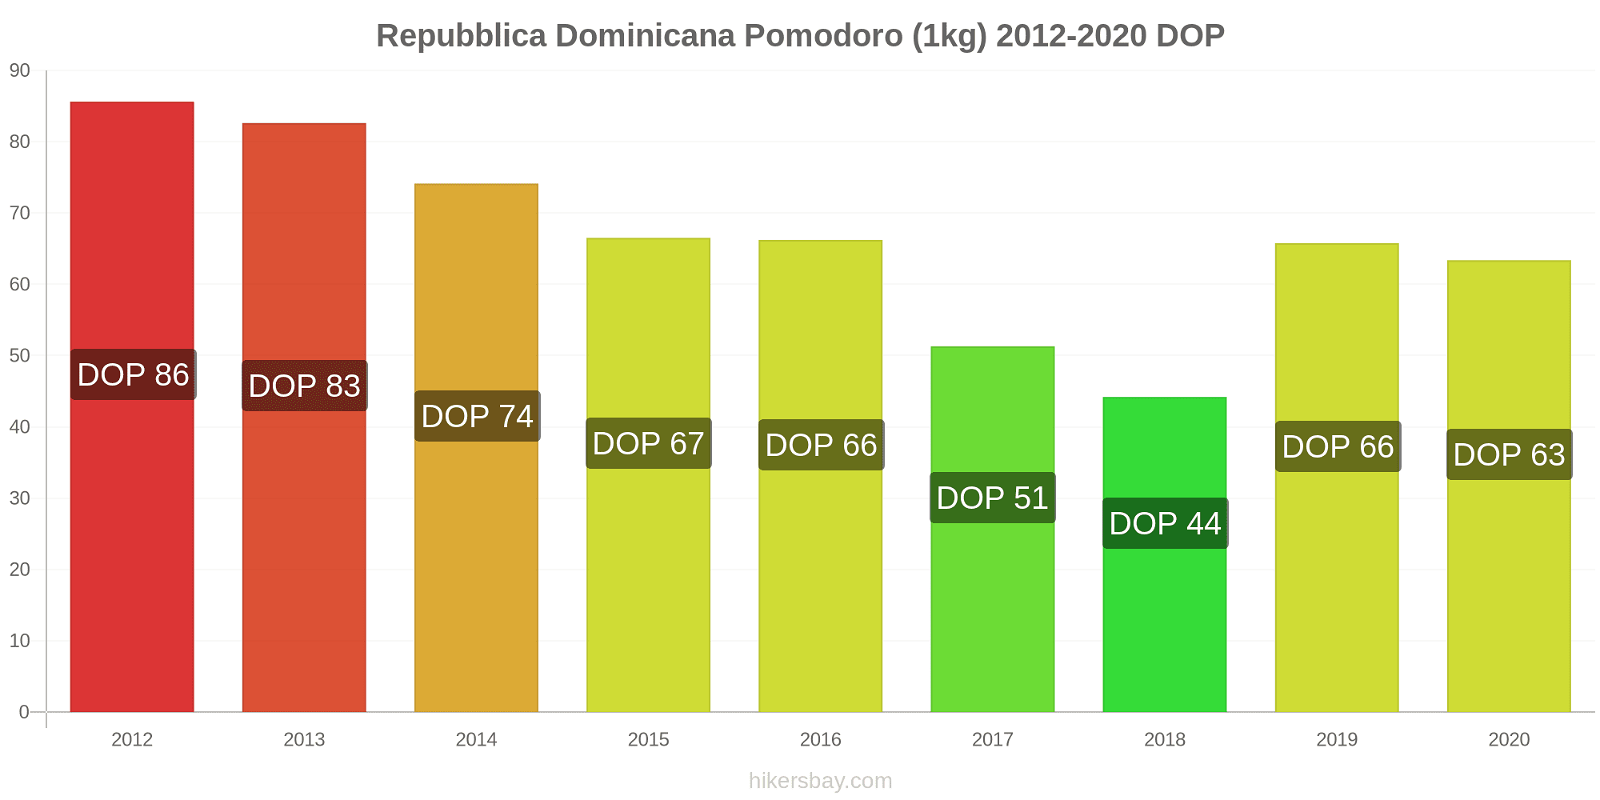 Repubblica Dominicana variazioni di prezzo Pomodoro (1kg) hikersbay.com